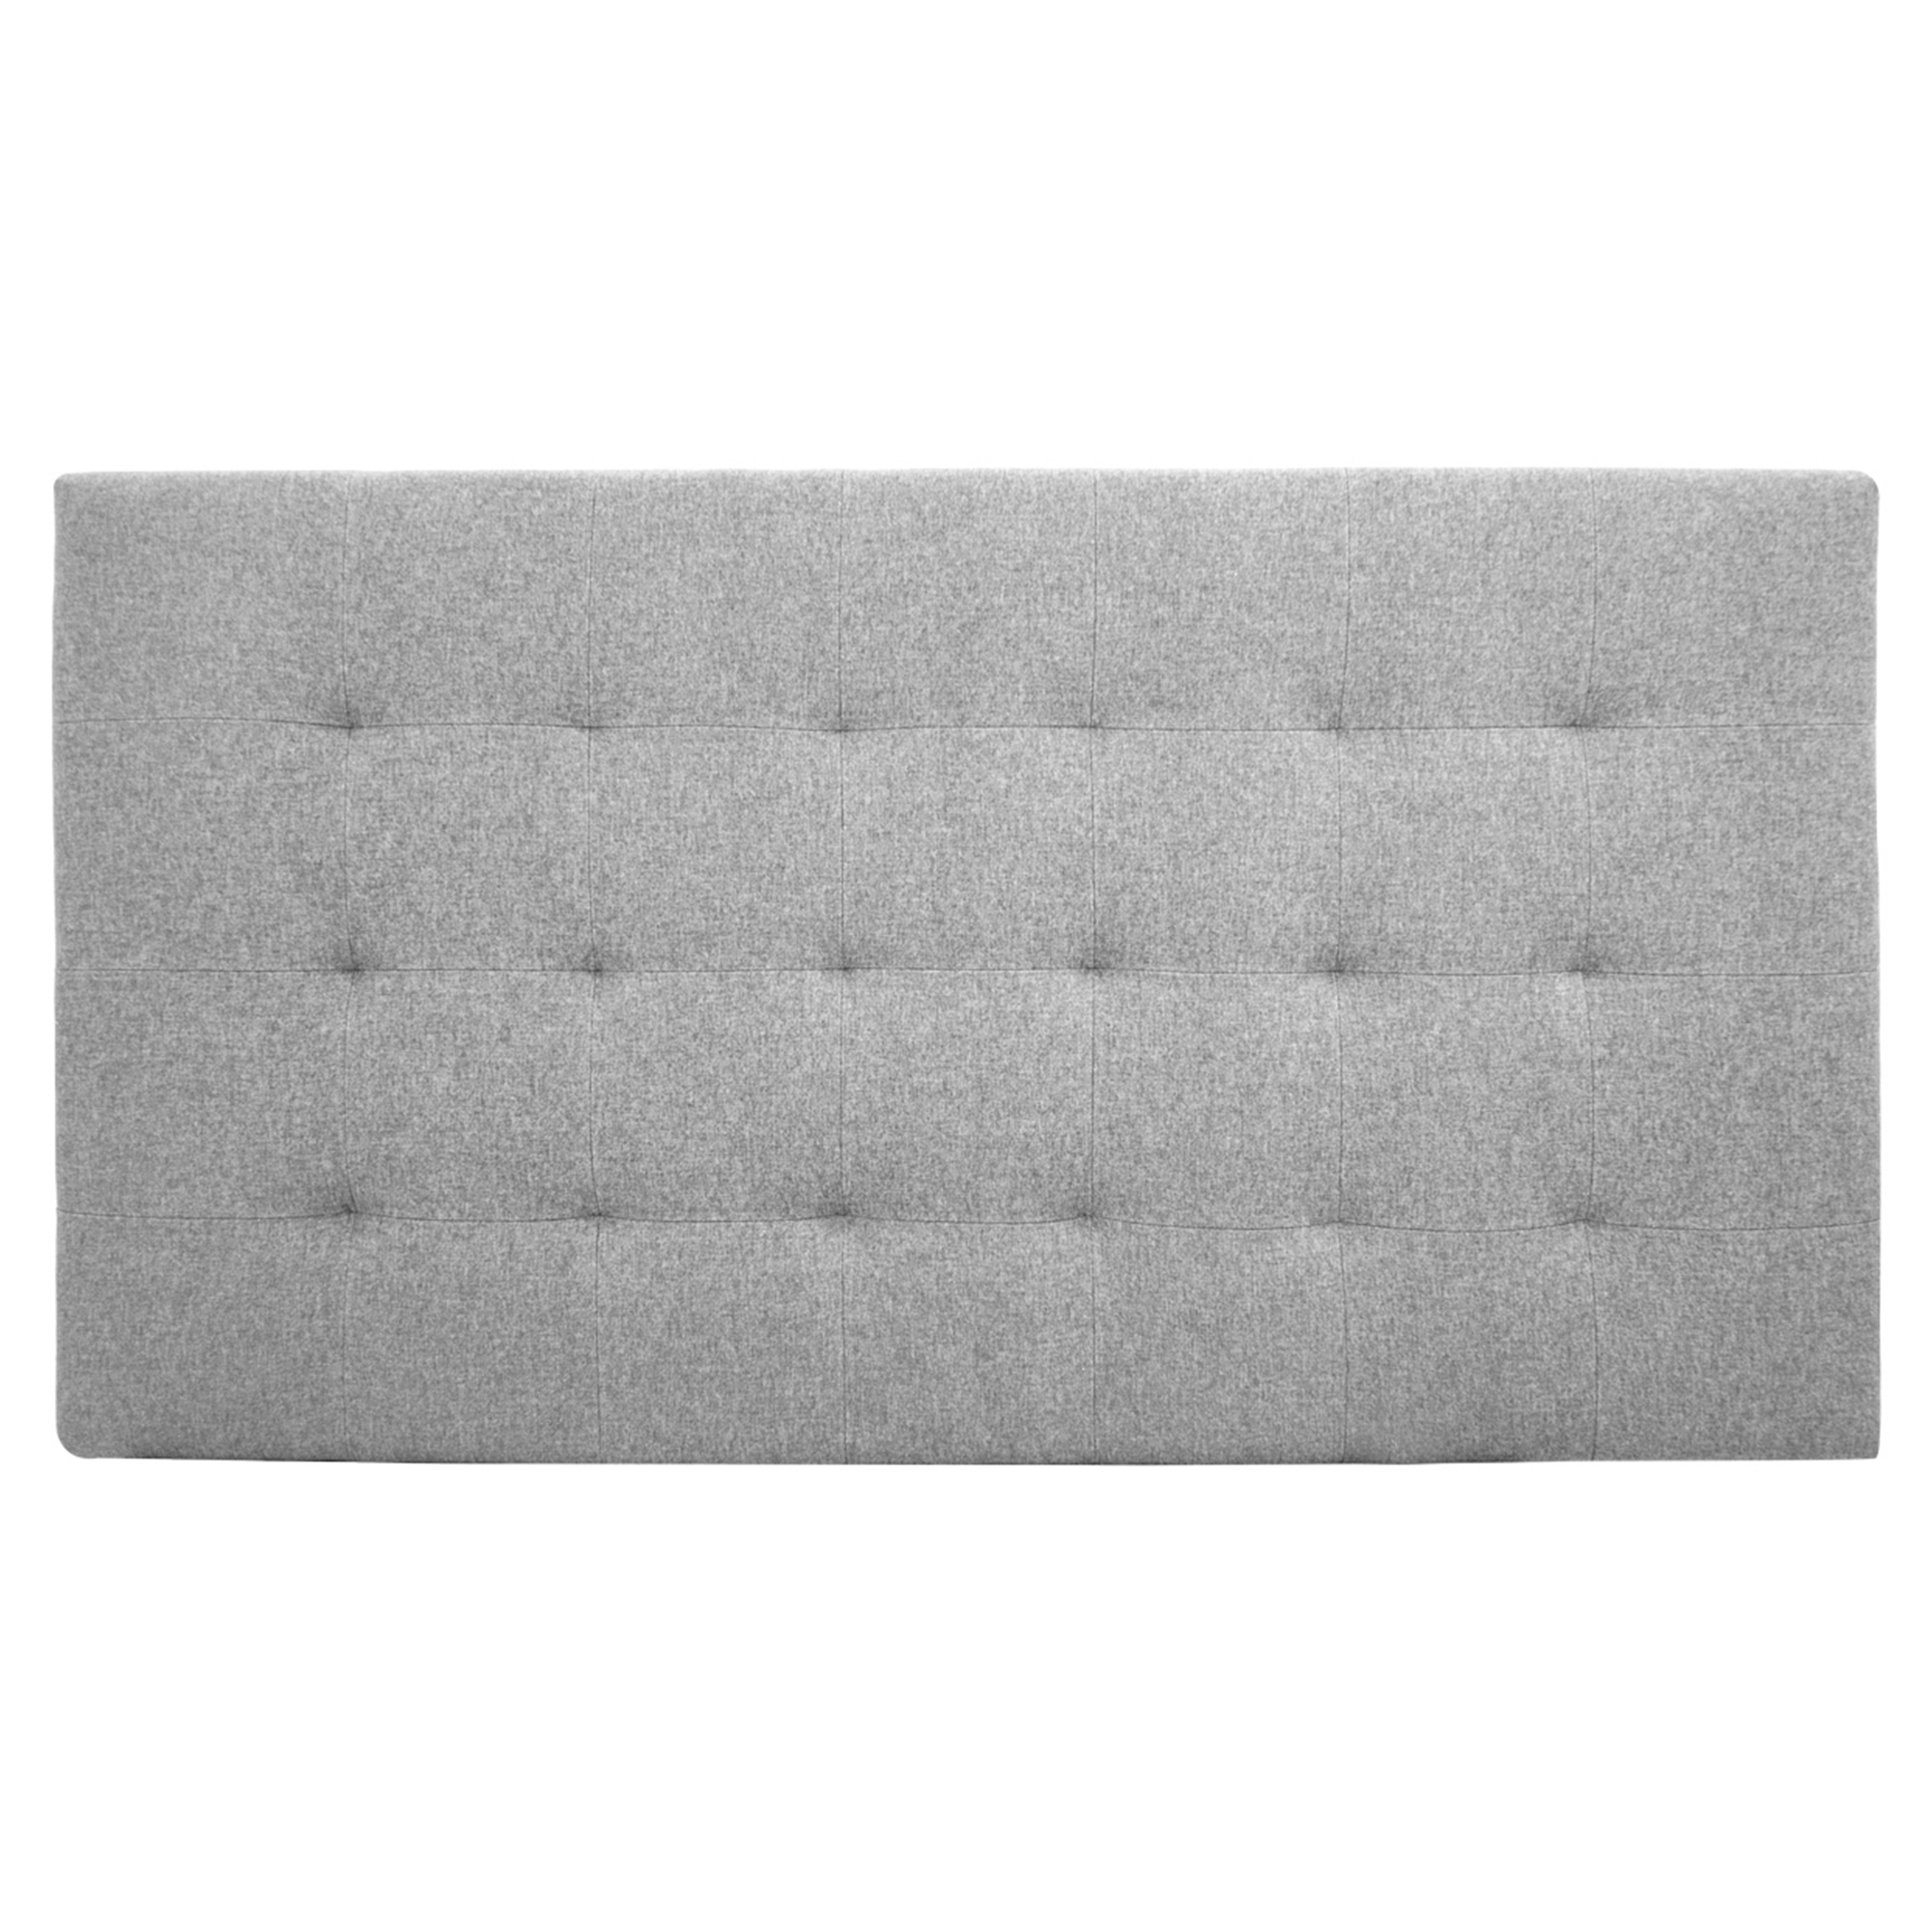 Tête de lit polyester plis couleur grise 200x80cm